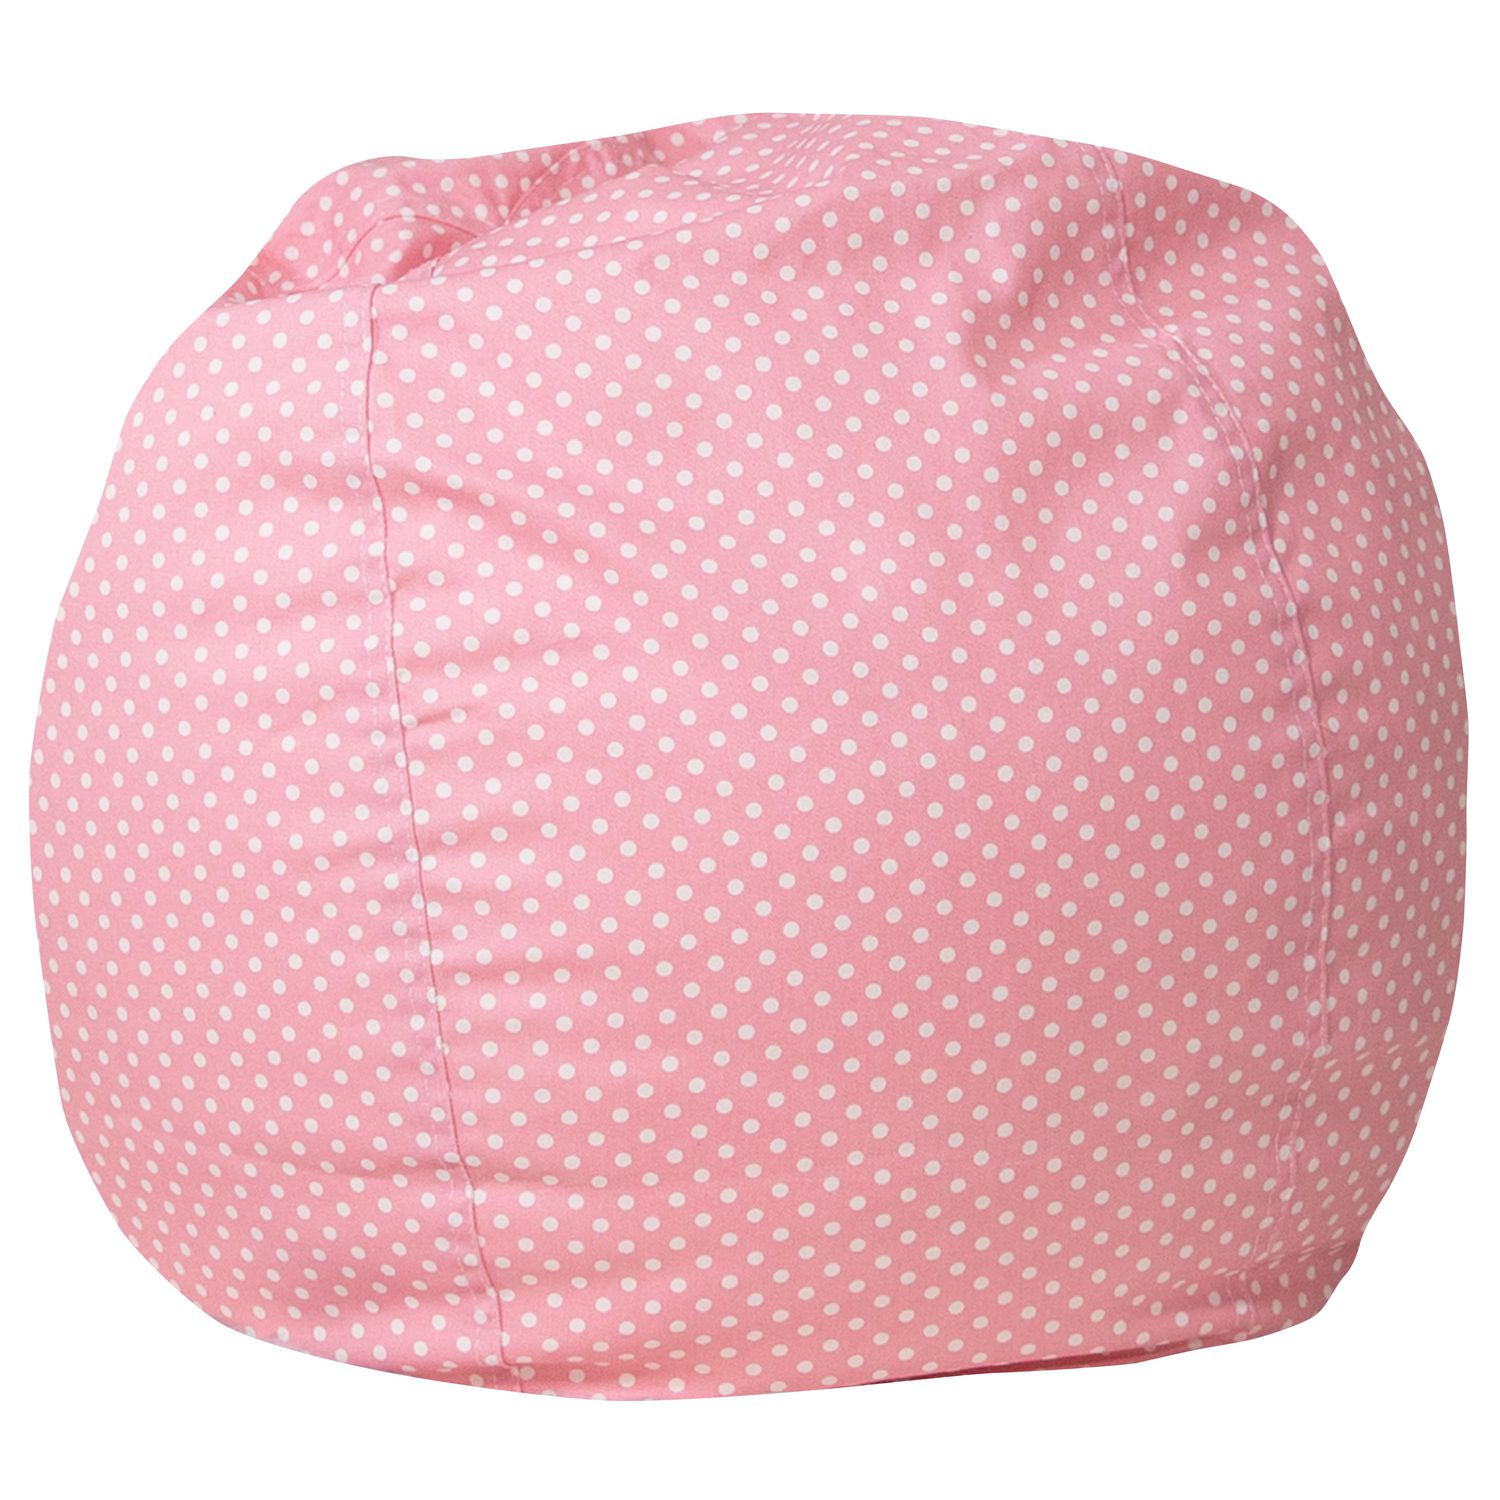 Small Light Pink Dot Kids Bean Bag Chair Walmart Canada